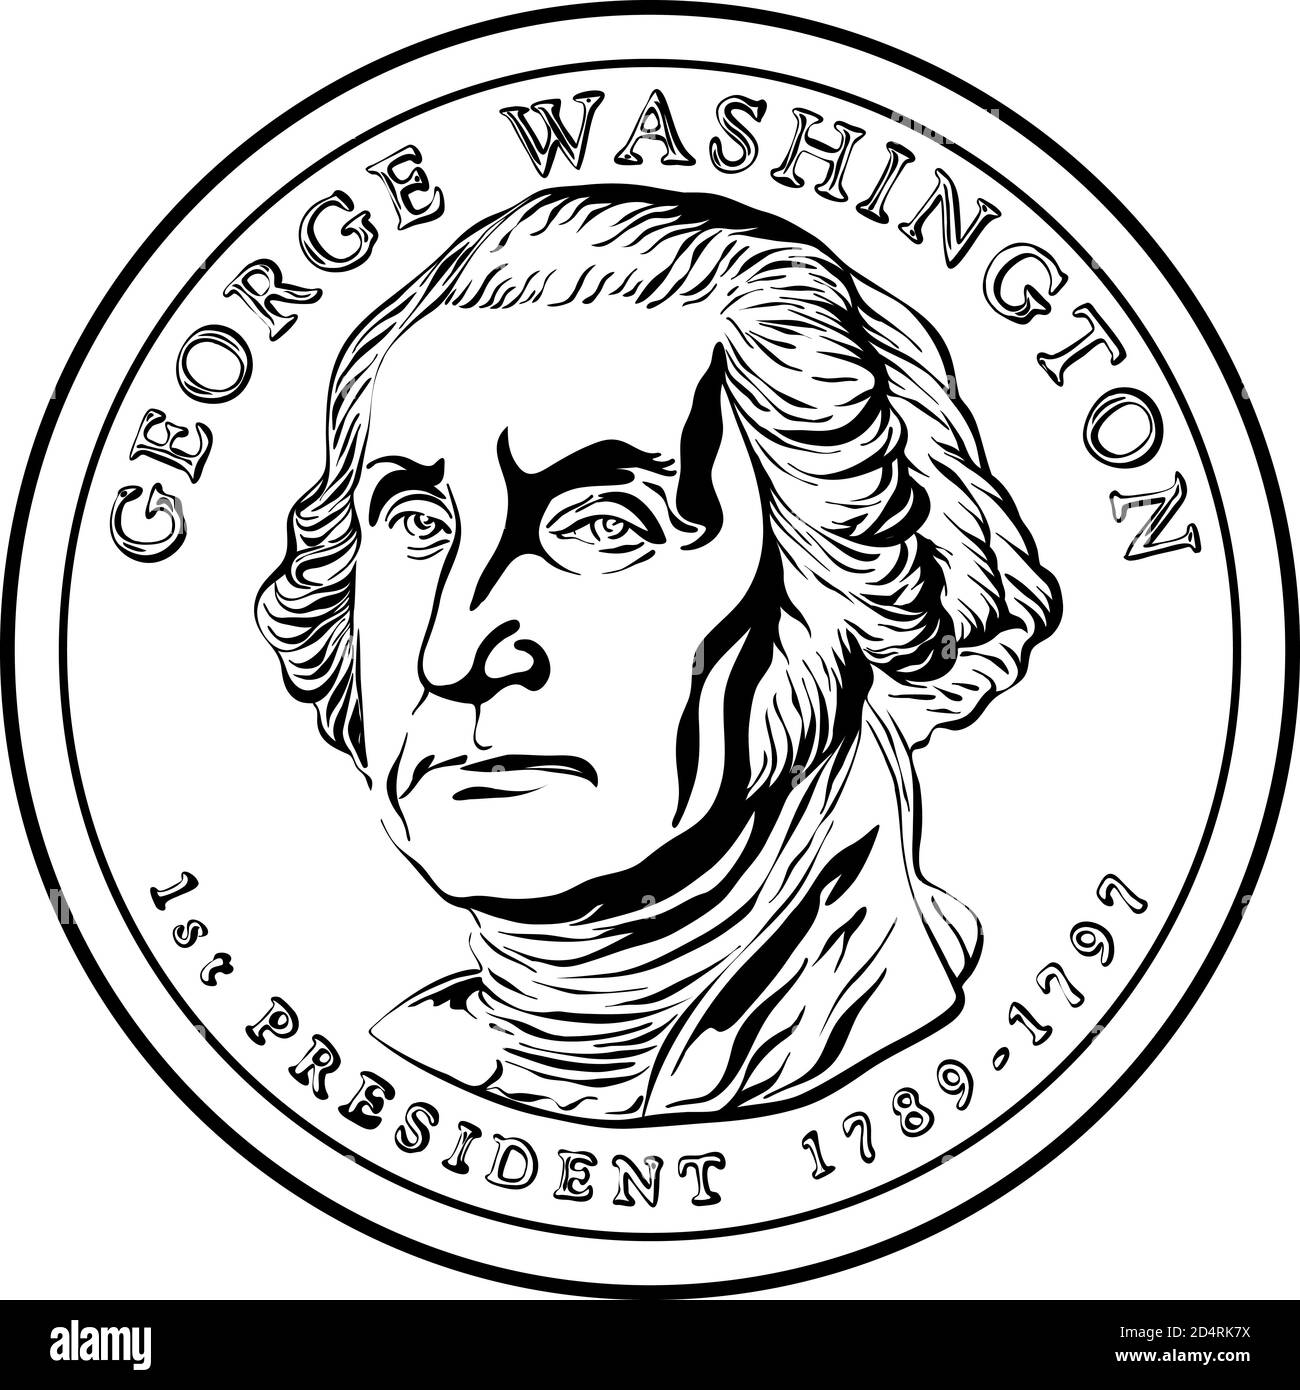 Amerikanisches Geld Präsidenten-Dollar-Münze, mit dem ersten Präsidenten der Vereinigten Staaten Washington auf der Vorderseite. Schwarzweiß-Bild Stock Vektor